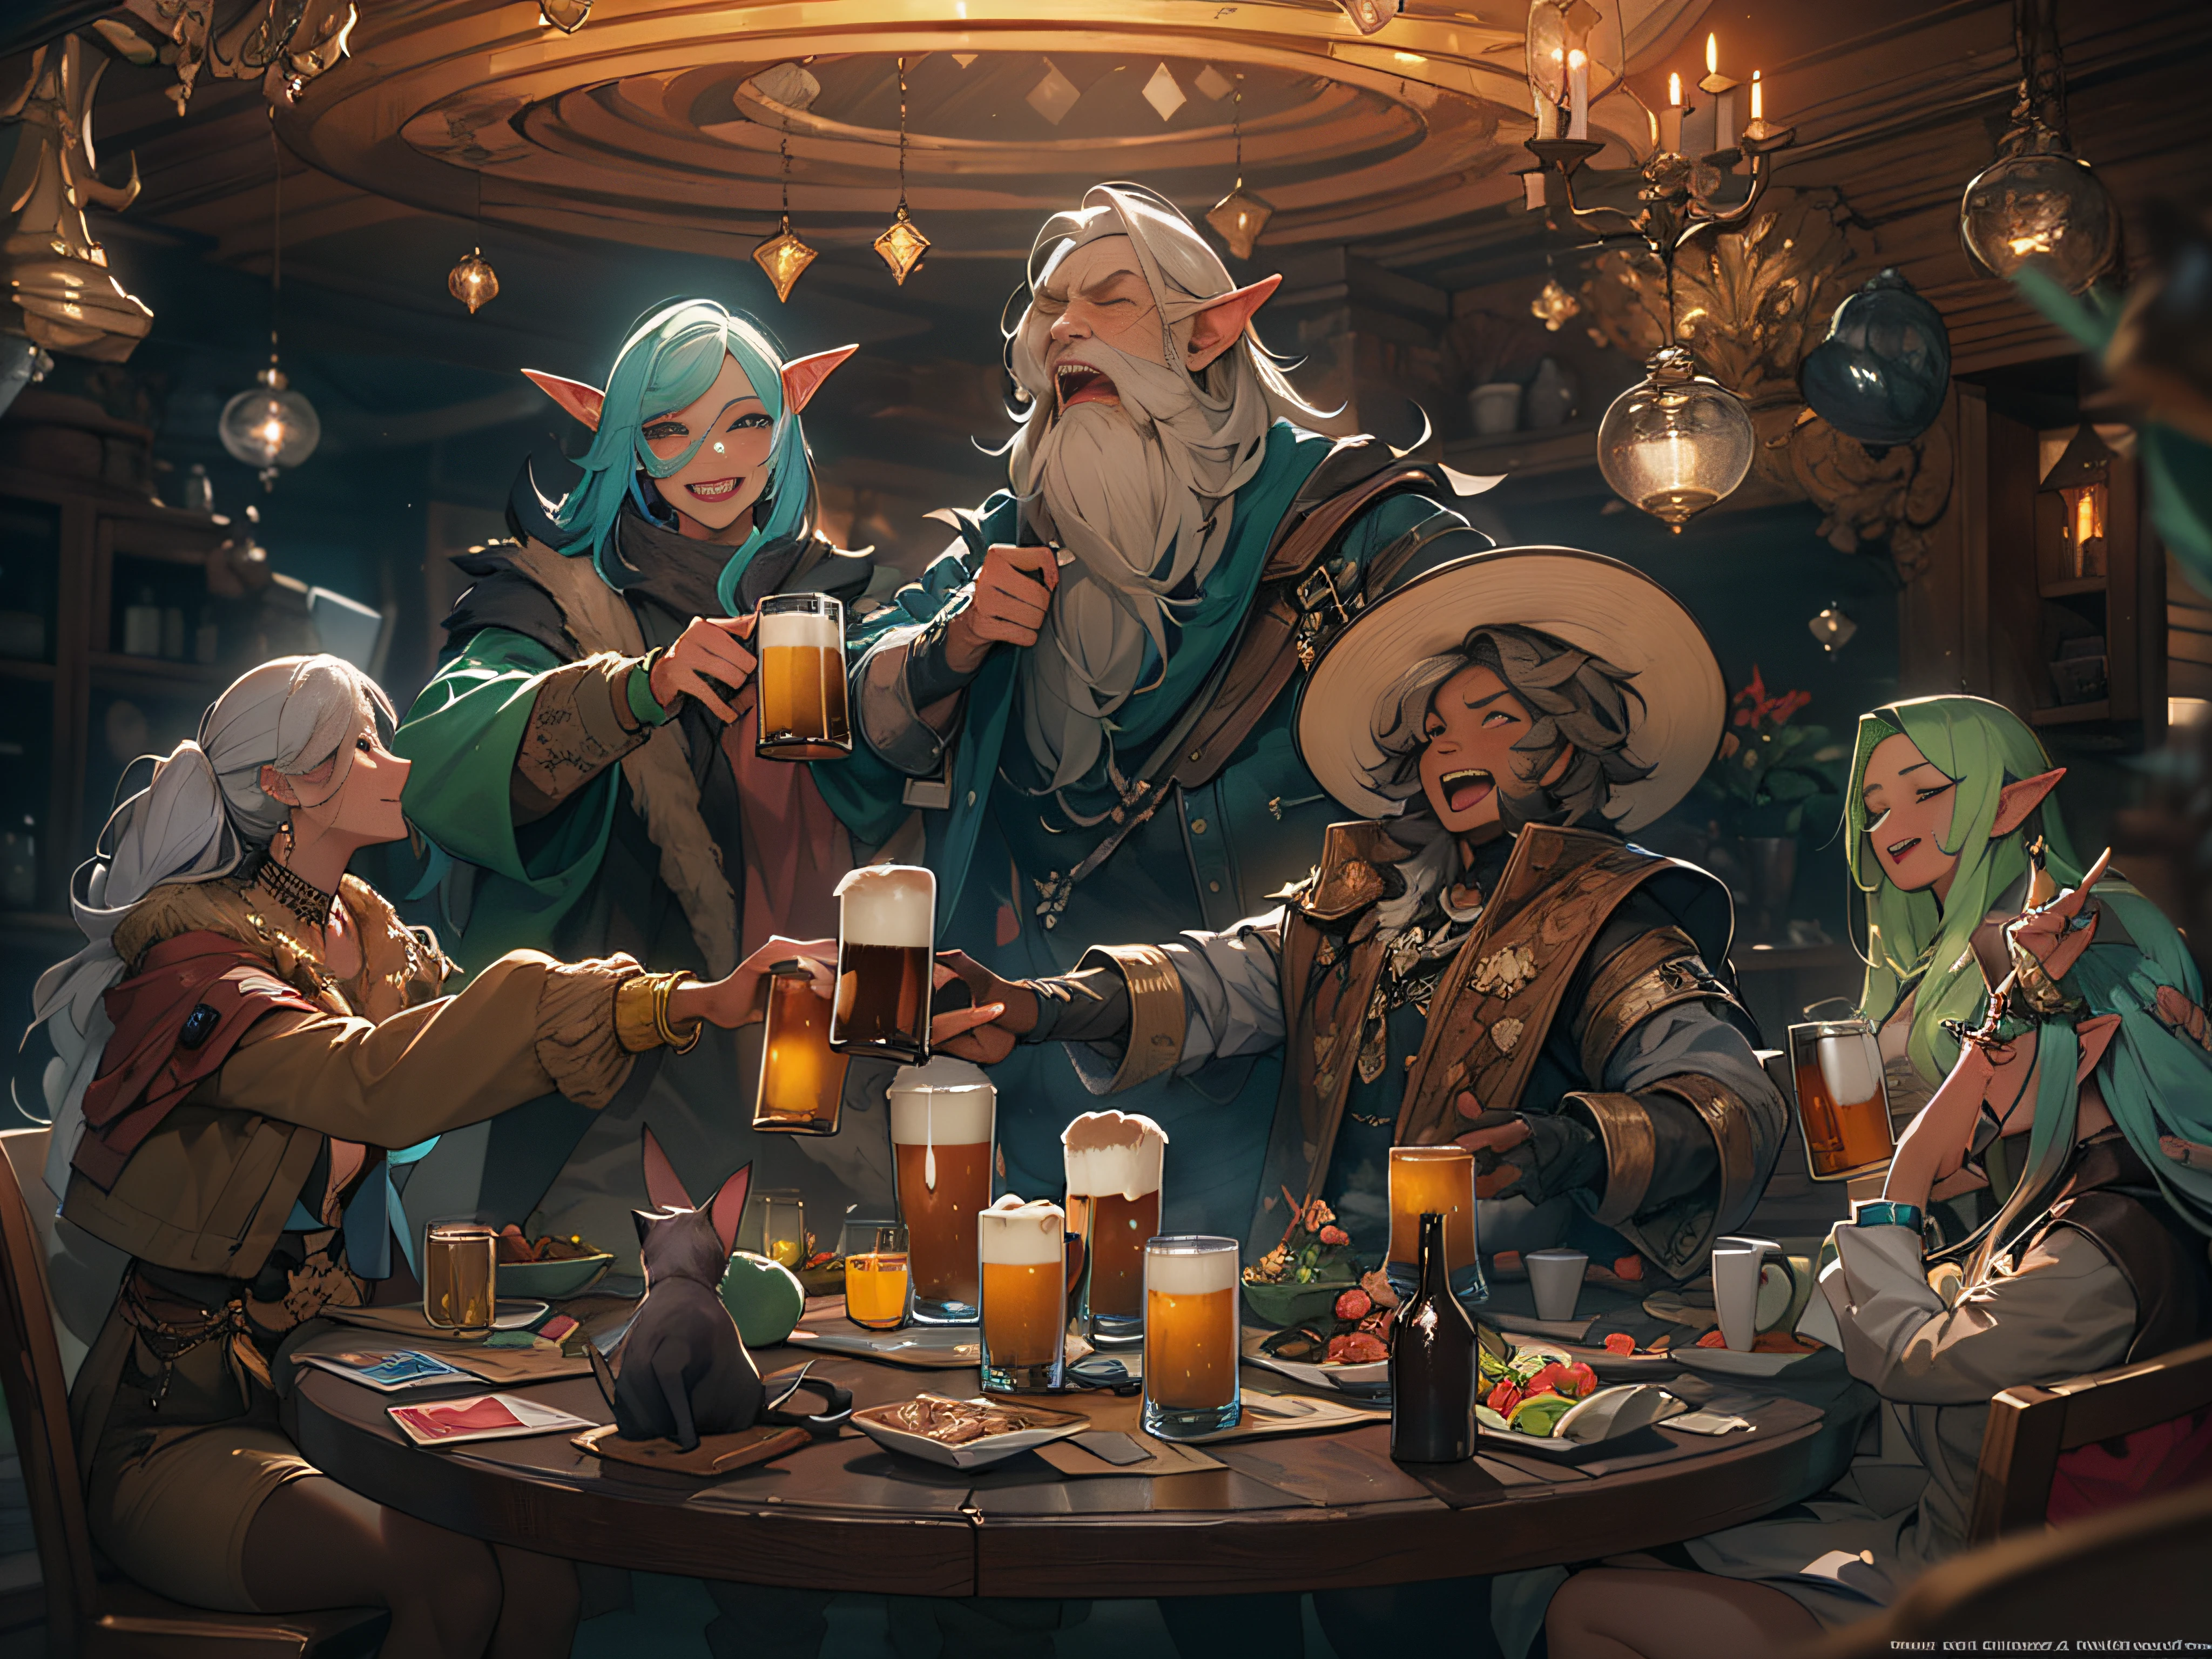 Obra maestra, Calidad superior, De otro mundo , ((5 personas de 5 razas diferentes sentadas alrededor de una mesa redonda)), Están felices y sonrientes, Cerveza en la mesa, (((5 personas brindan con jarras de cerveza)))+++, ((5 personas sostienen cerveza))++, Break 5 personas son de género mixto, elfo rubio, Enano musculoso corto, vaquero, dark haired cat girl and old wizard BREAK Fantasía, De otro mundo Fantasía, deep Fantasía, todos sonriendo , ambiente feliz, break, detalle, Realista, 4k highly detalleed digital art, Representación de octanaje, bioluminiscencia, BREAK Arte conceptual con resolución 8K, realism, mappa studio, Arte oficial, ilustración, Línea clara, (Frío_color), composición perfecta, Absurdo, Fantasía, enfocar, Regla de los tercios